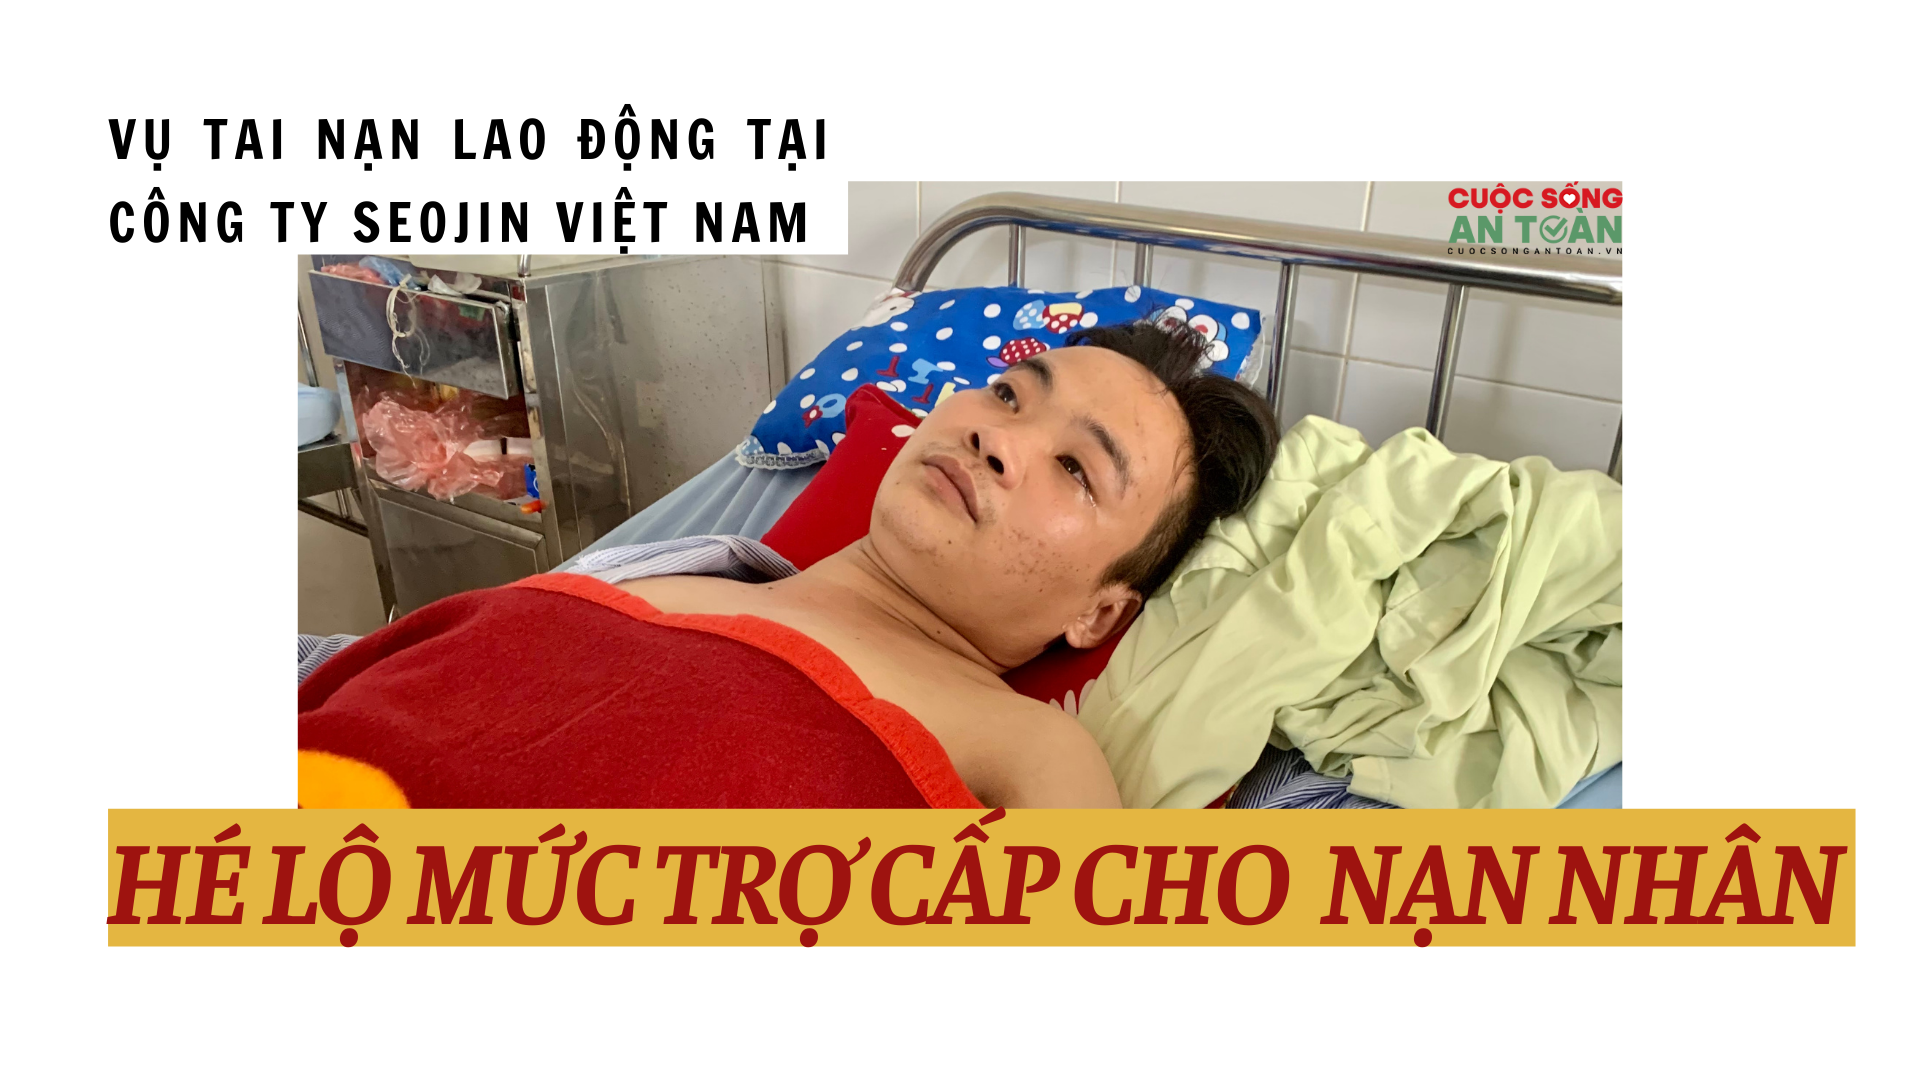 Vụ tai nạn lao động tại Công ty Seojin Việt Nam: Hé lộ mức trợ cấp cho nạn nhân